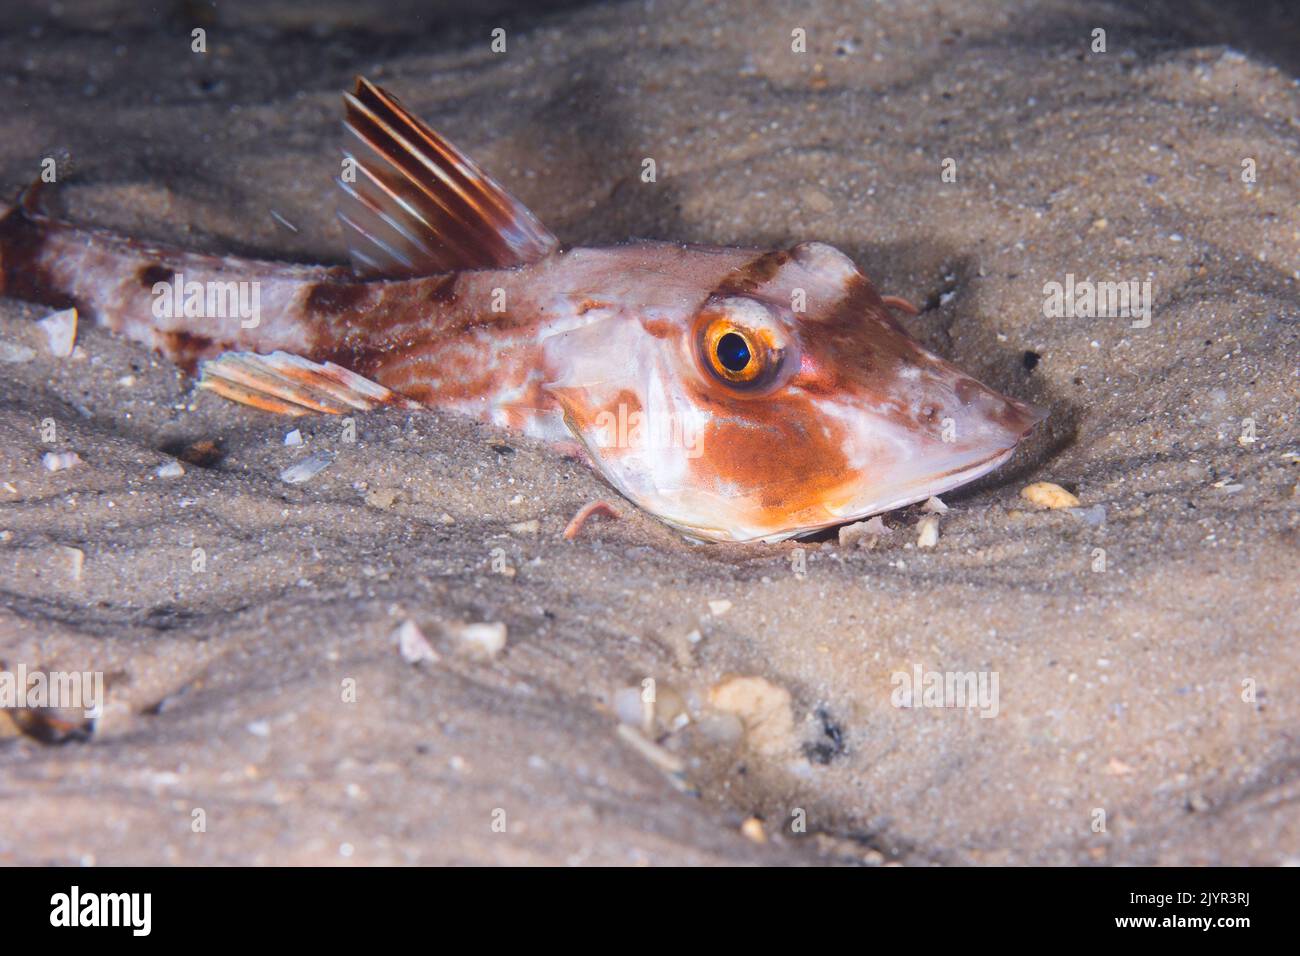 A Bluefin gurnard fish (Chelidonichthys kumu) hiding in the sand Stock Photo